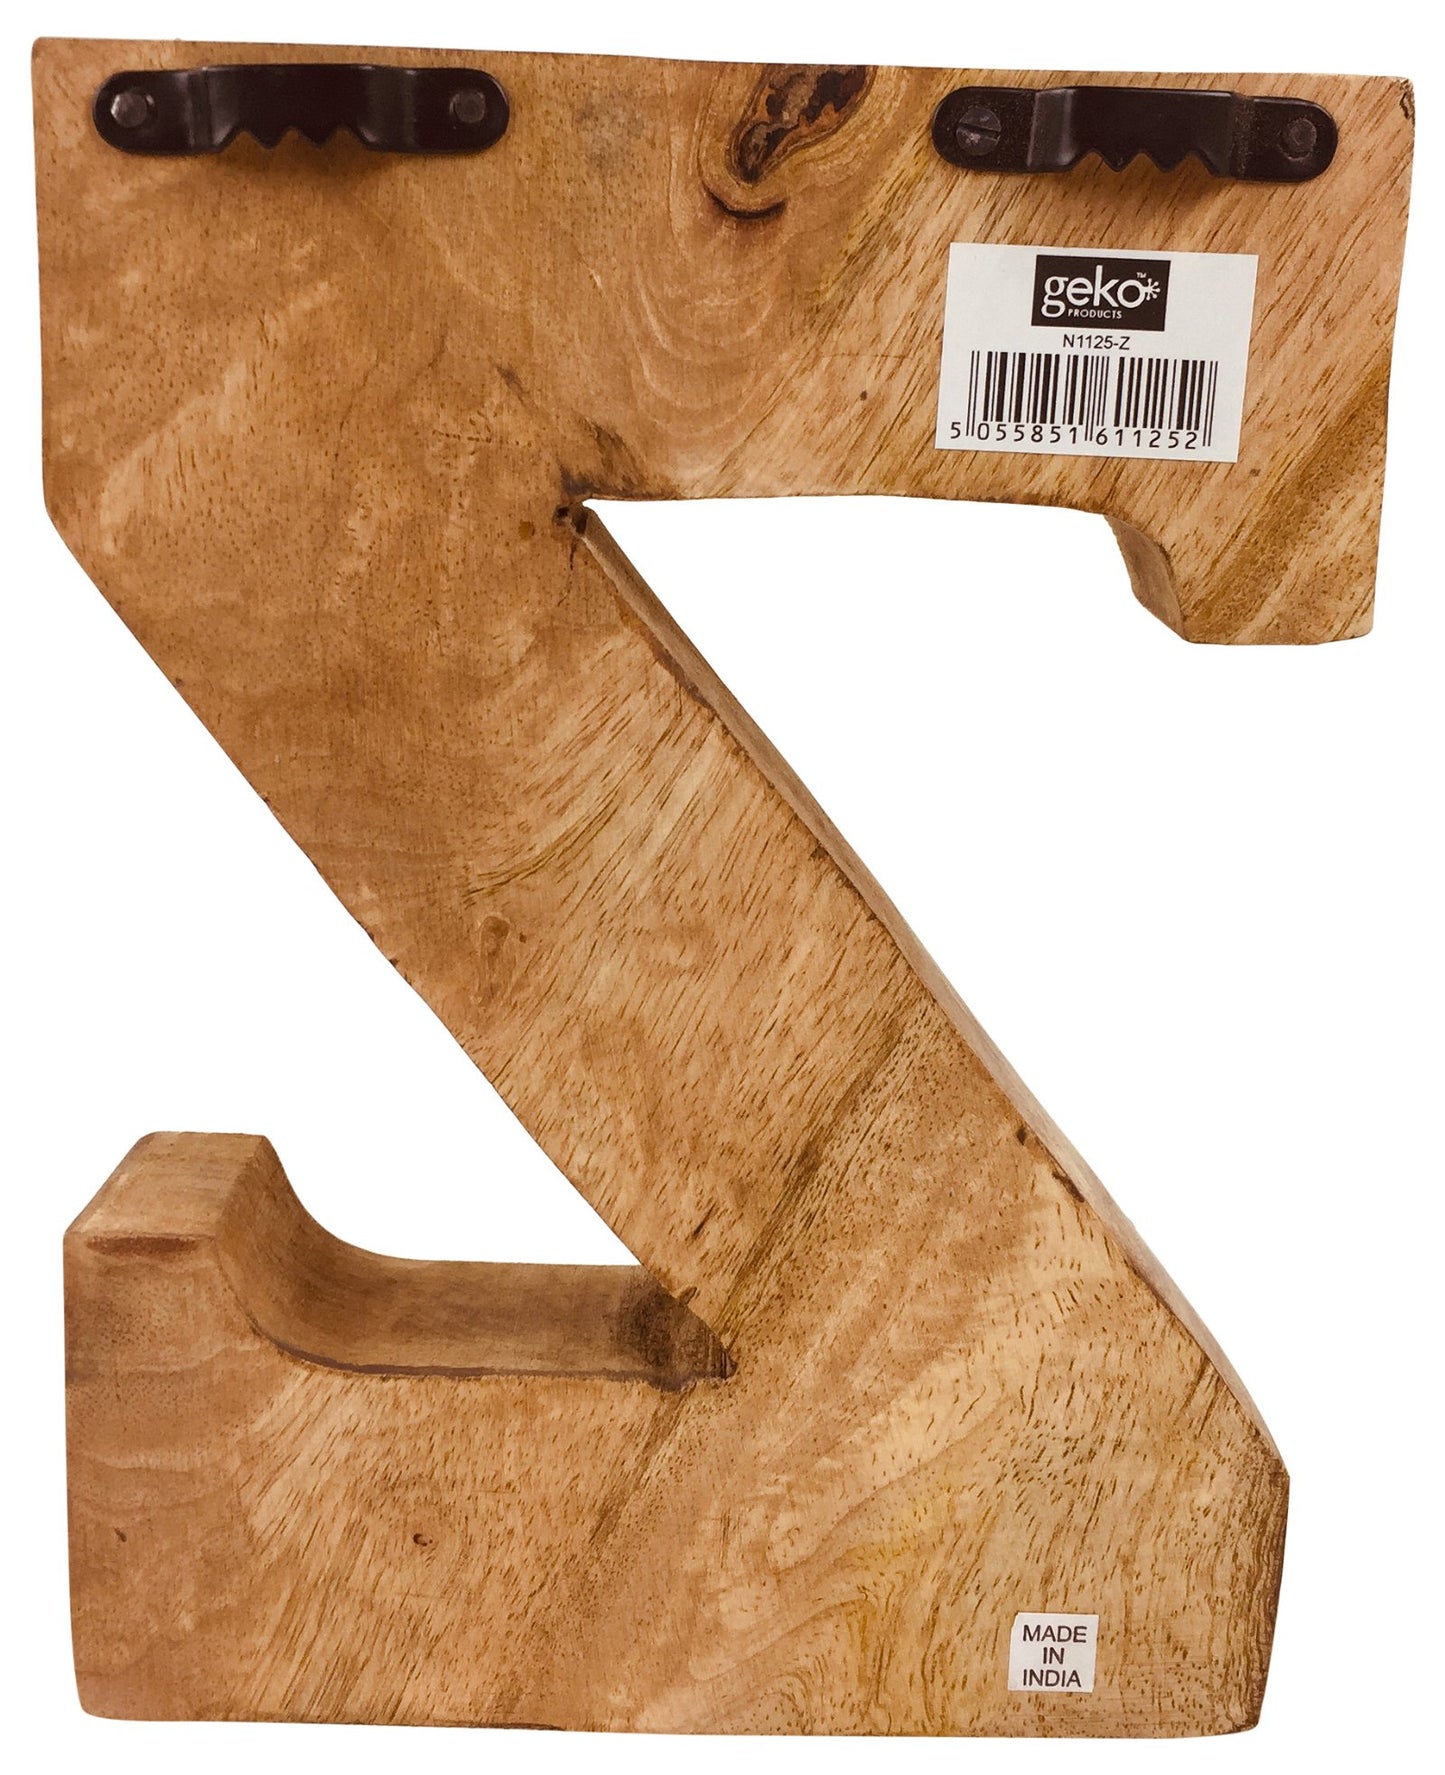 Hand Carved Wooden Embossed Letter Z - Kaftan direct